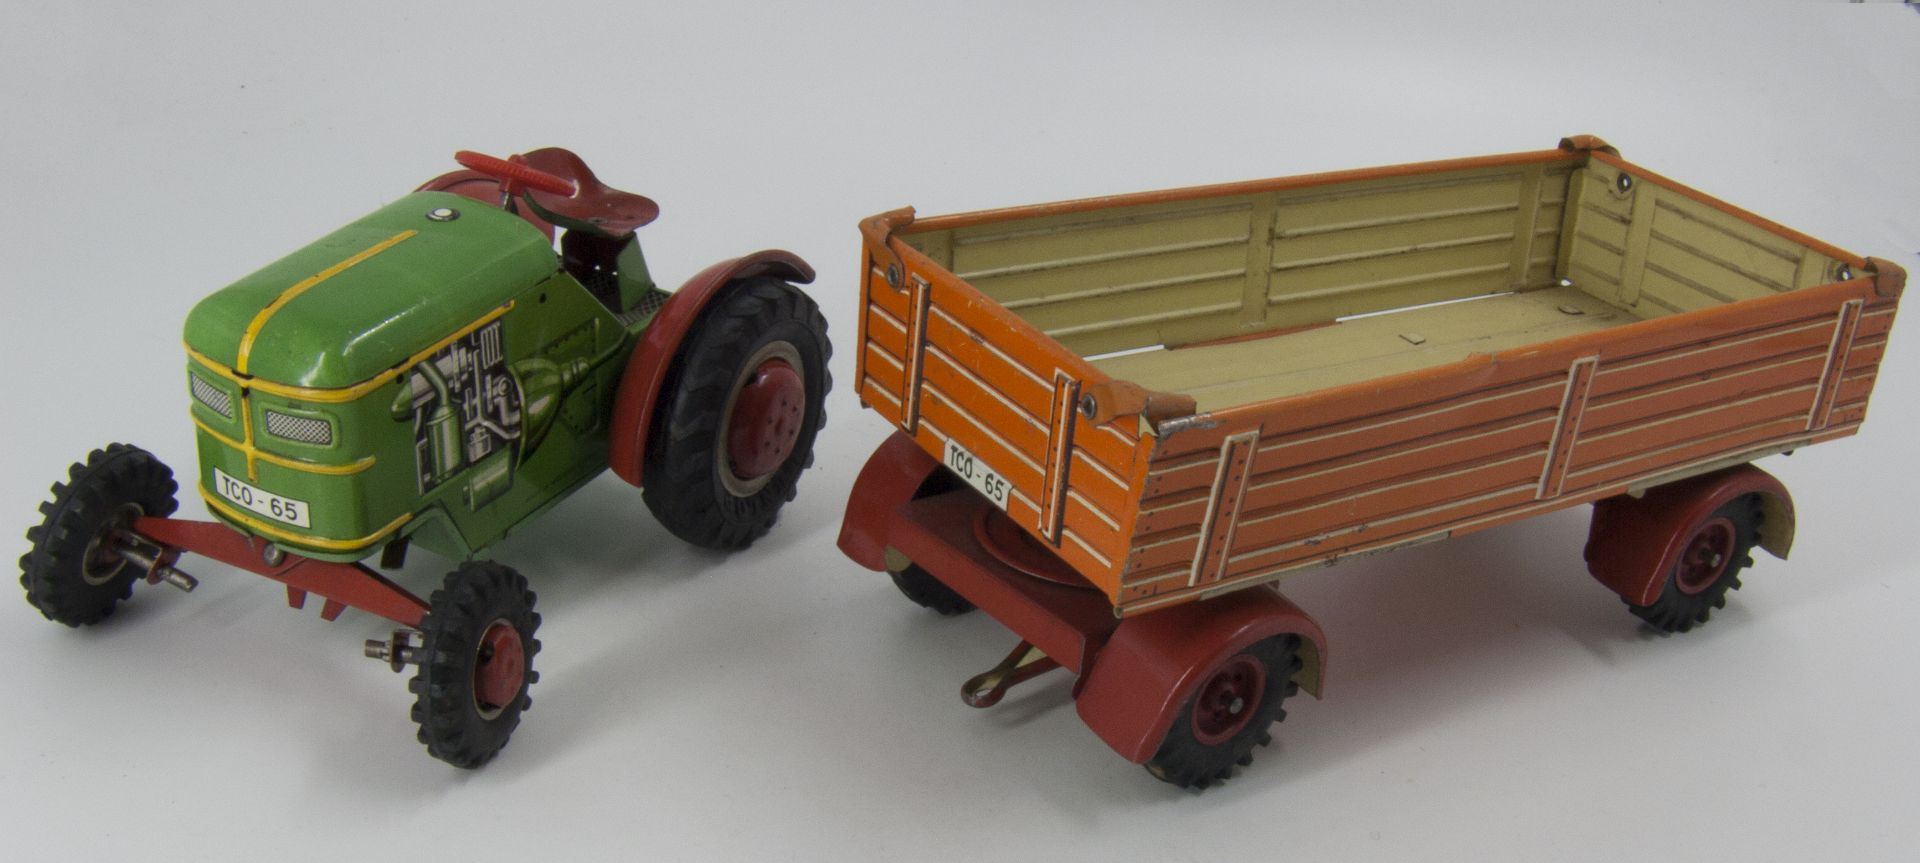 Tippco Traktor mit Anhänger, Blech lithografiert. TCO - 65.